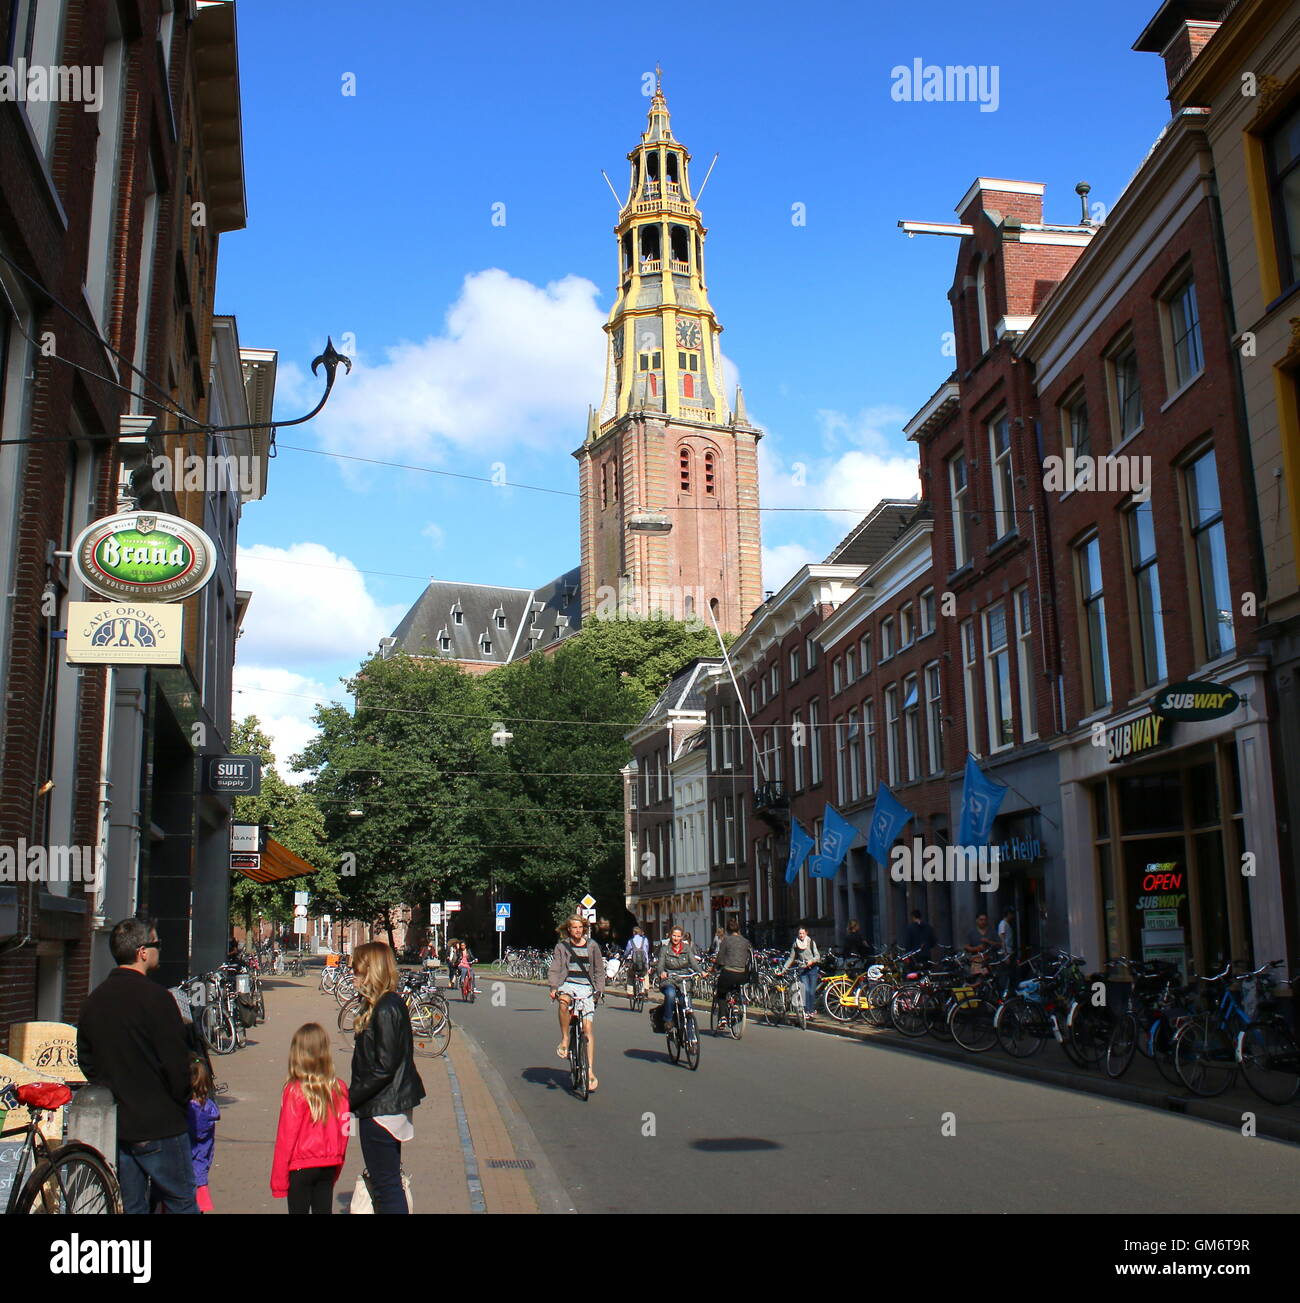 Les gens shopping in Brugstraat (Bridge Street) de Groningen, Pays-Bas. Église du 17ème siècle Der Aa-Kerk en arrière-plan. Banque D'Images